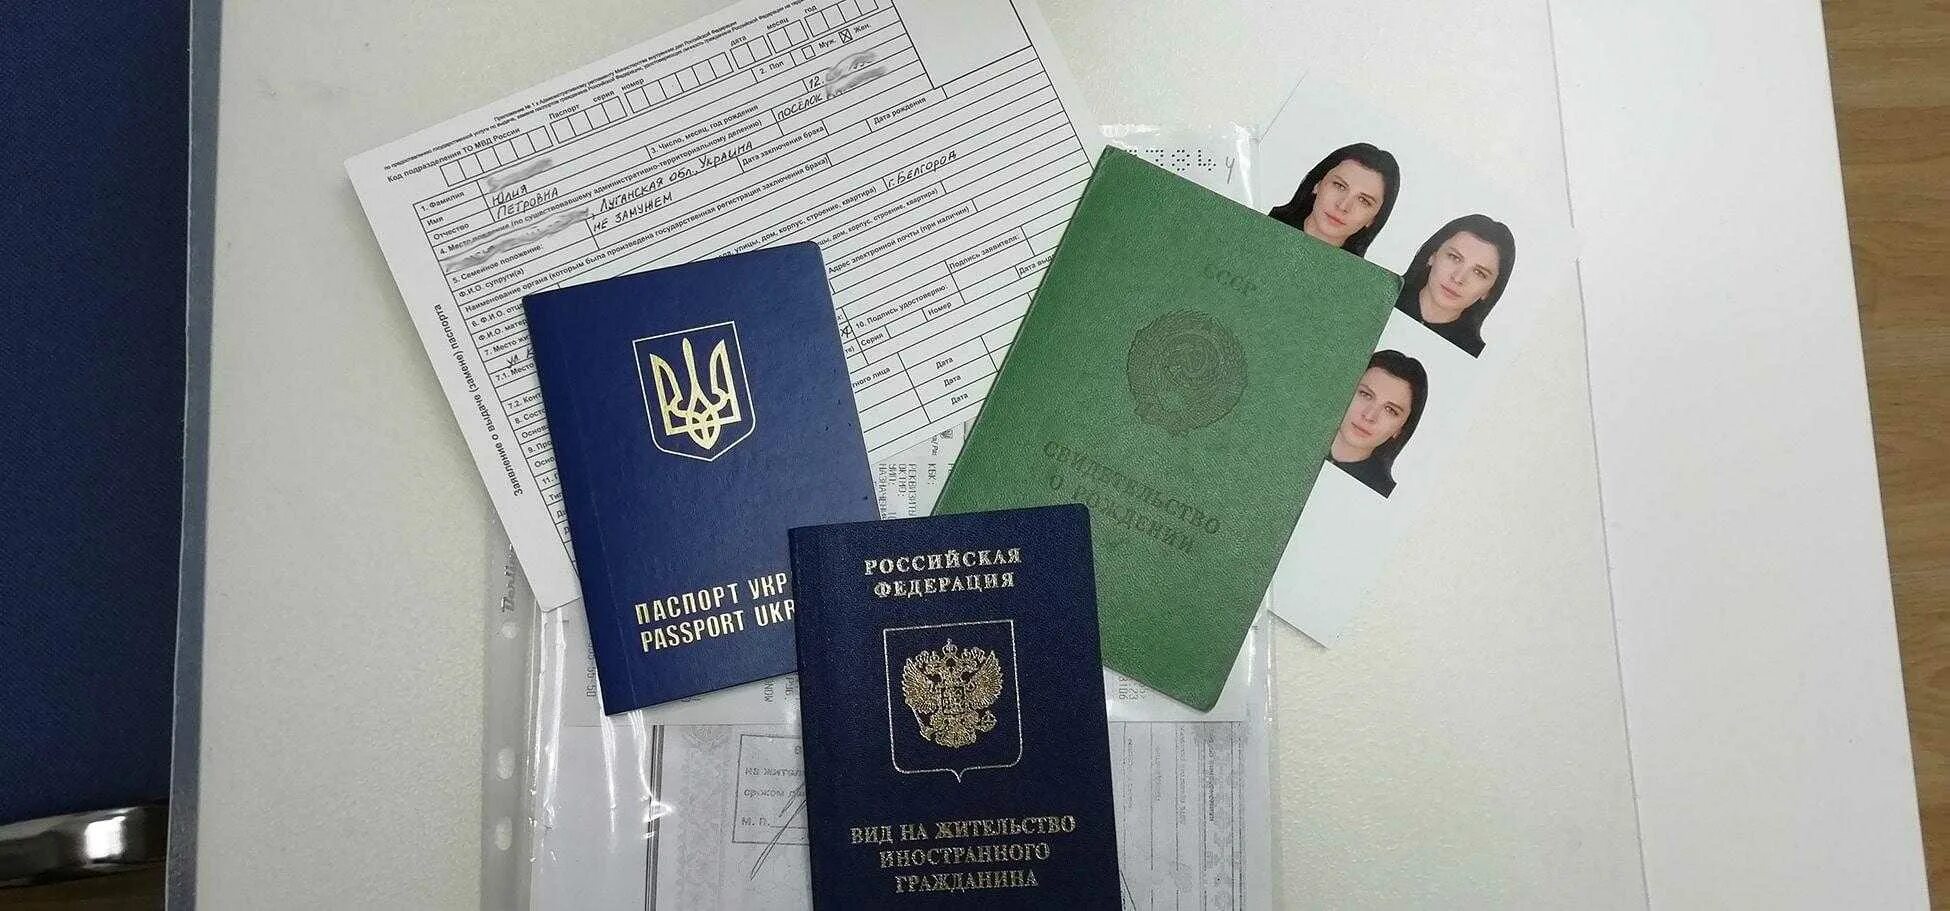 Вид на жительство. Вид на жительство РФ. ВНЖ документ. Вид на жительство иностранного гражданина. Получение гражданства рф для казахстана